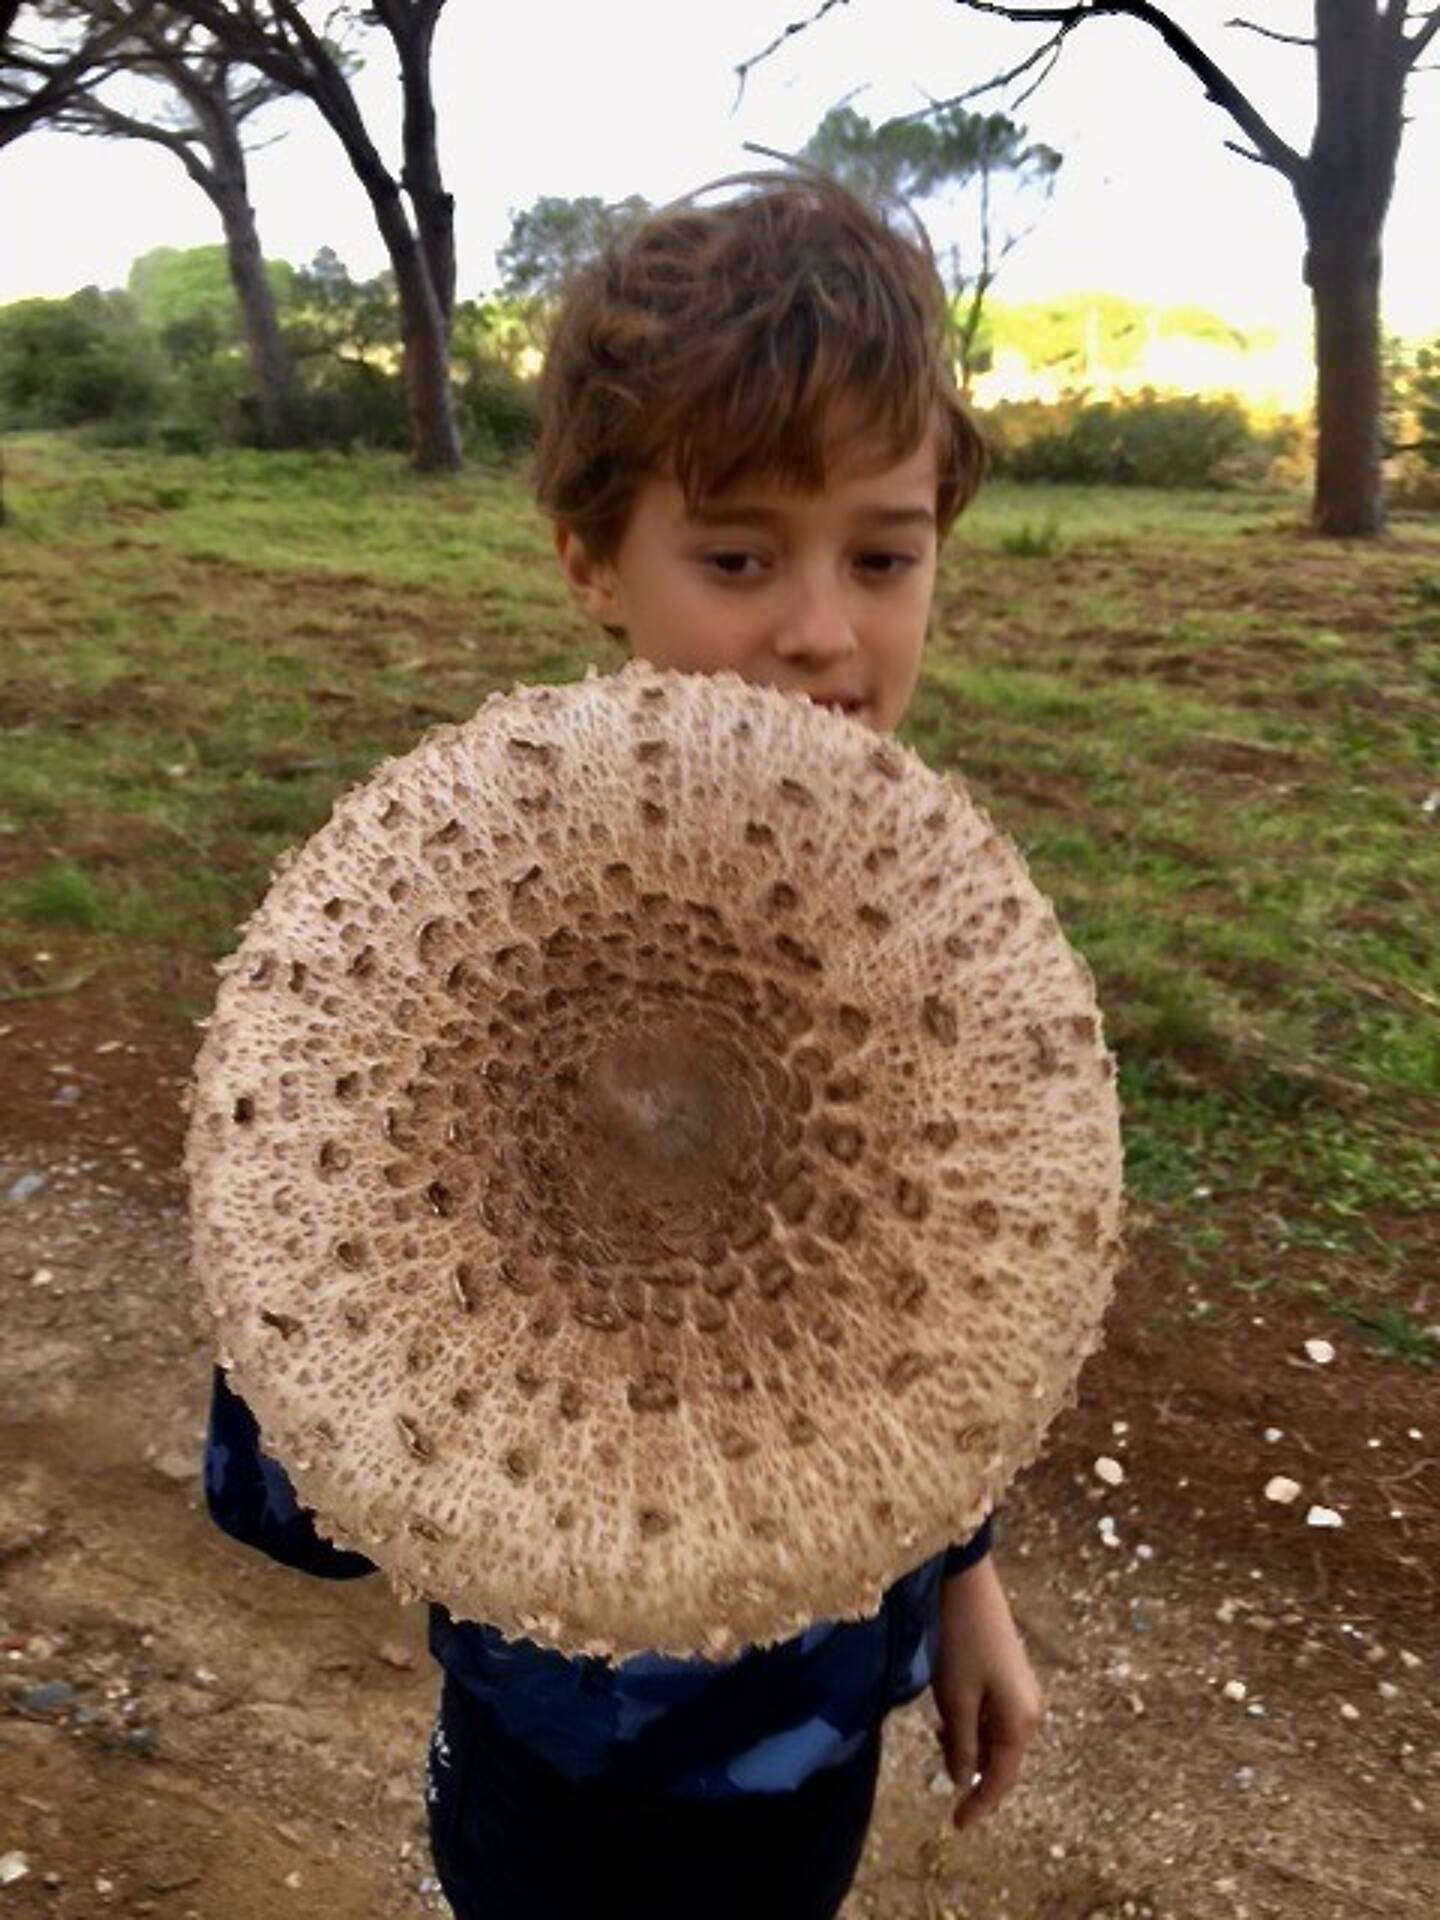 En balade dans la plaine de Ramatuelle, un enfant a découvert une coulemelle géante.